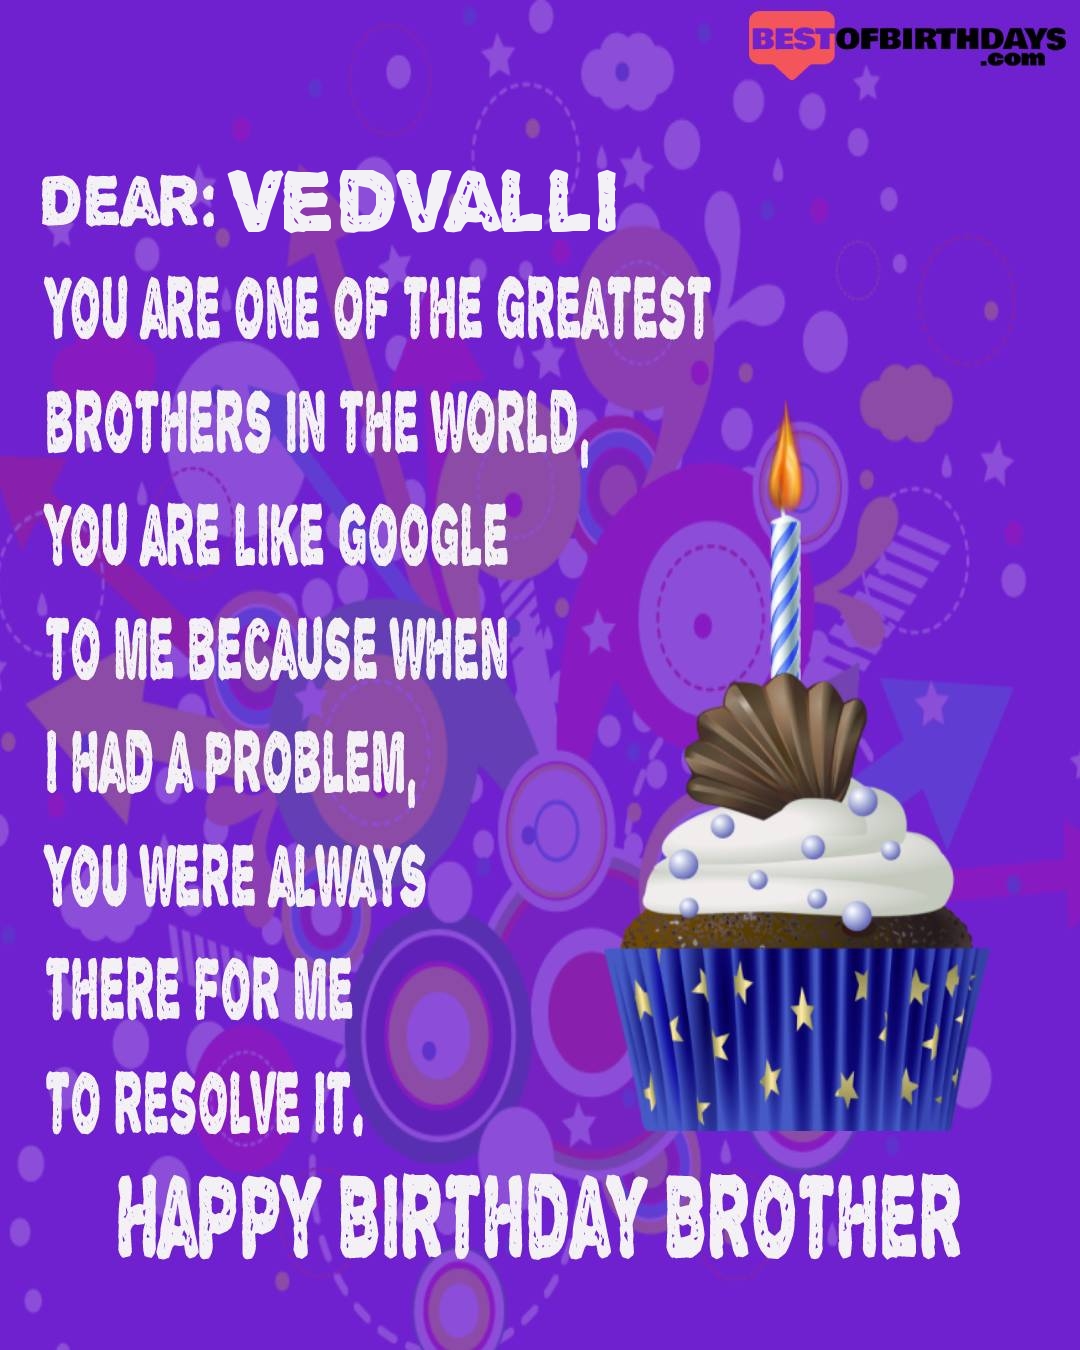 Happy birthday vedvalli bhai brother bro